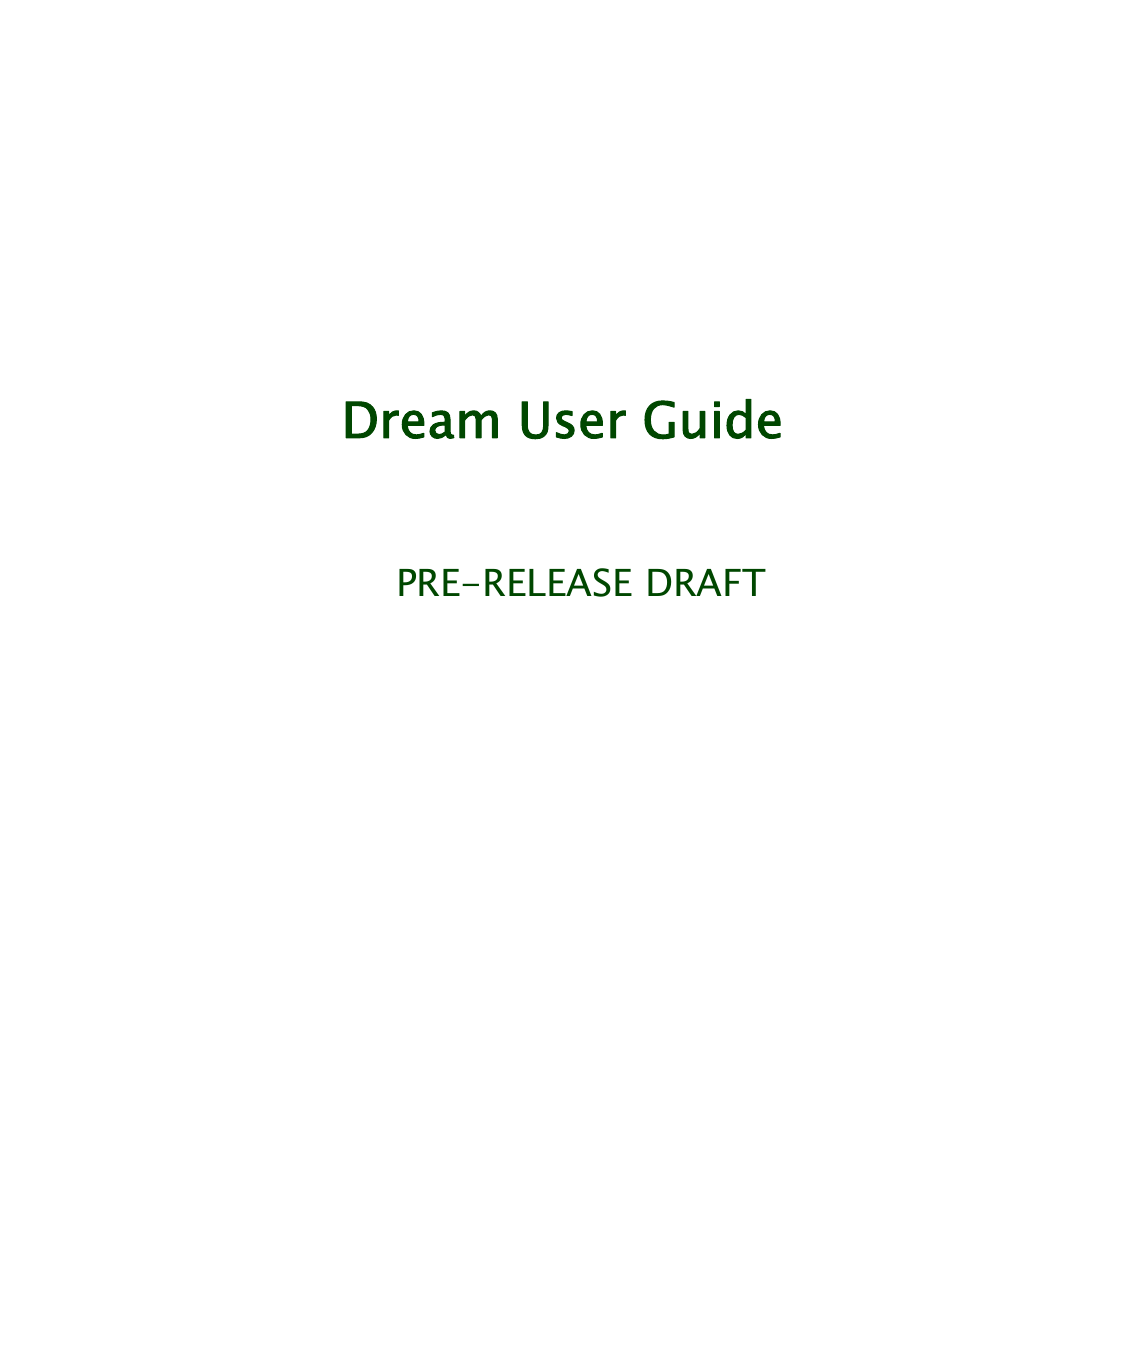    Dream User Guide   PRE-RELEASE DRAFT                   